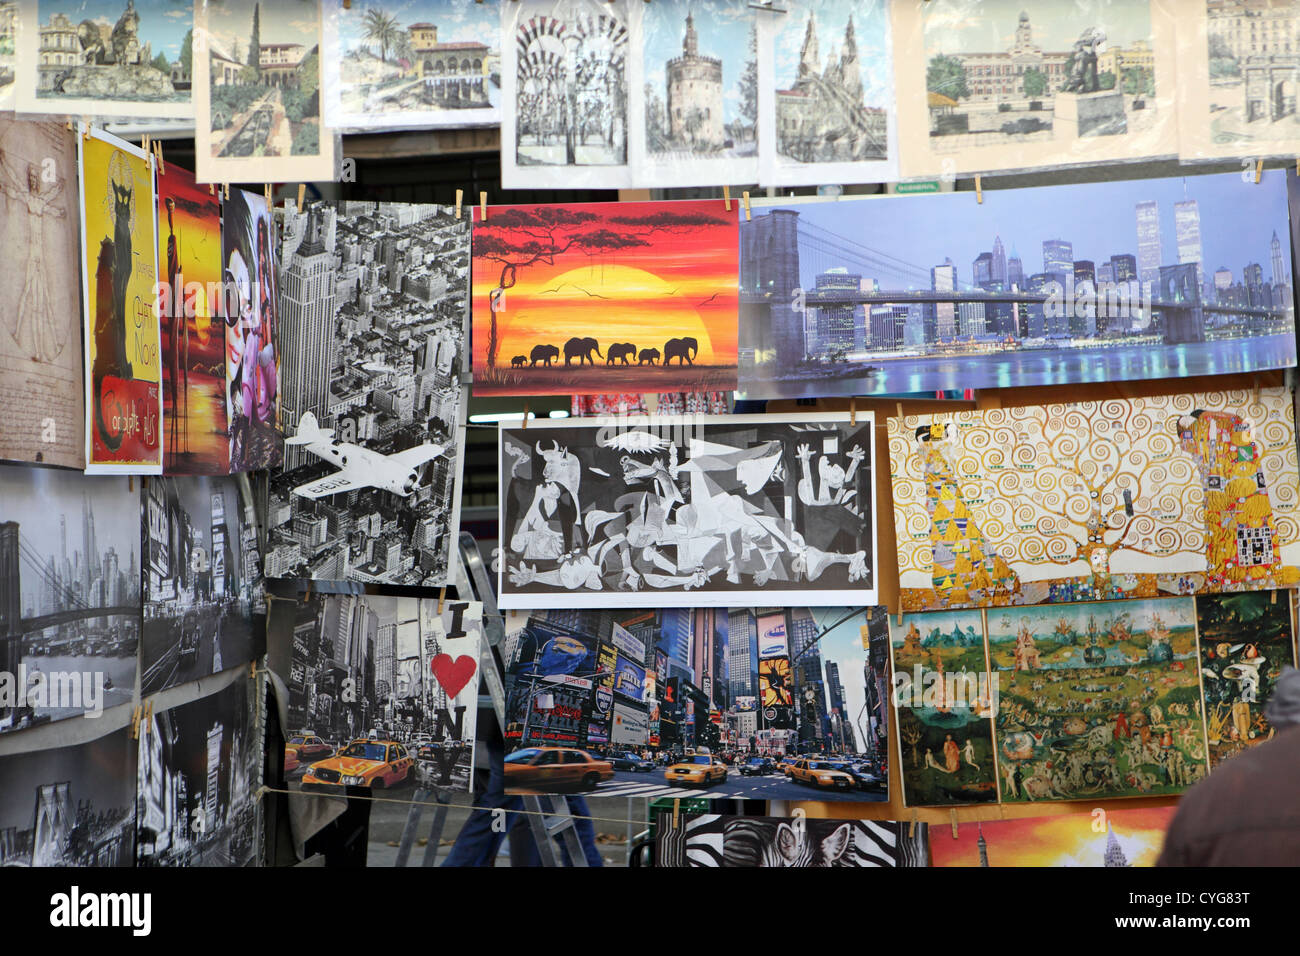 Domingo El Rastro flea market street, reproducción de arte trabajar imágenes con copyright para la venta, Madrid, España Foto de stock